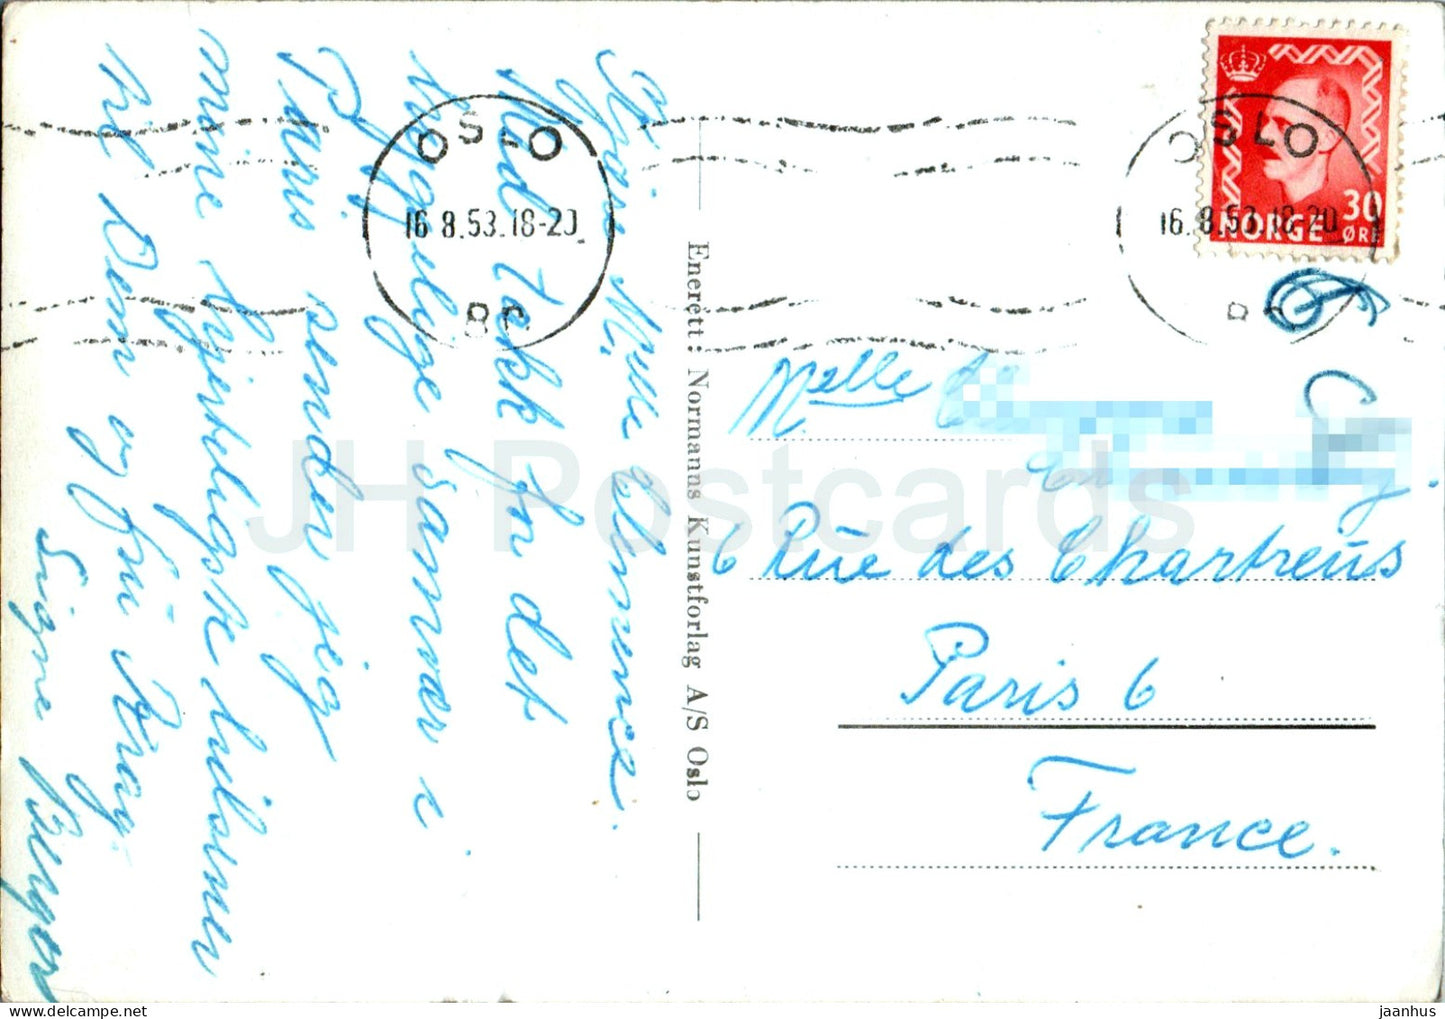 Videsaeter - mot Stryn - 13/251 - old postcard - 1953 - Norway - used